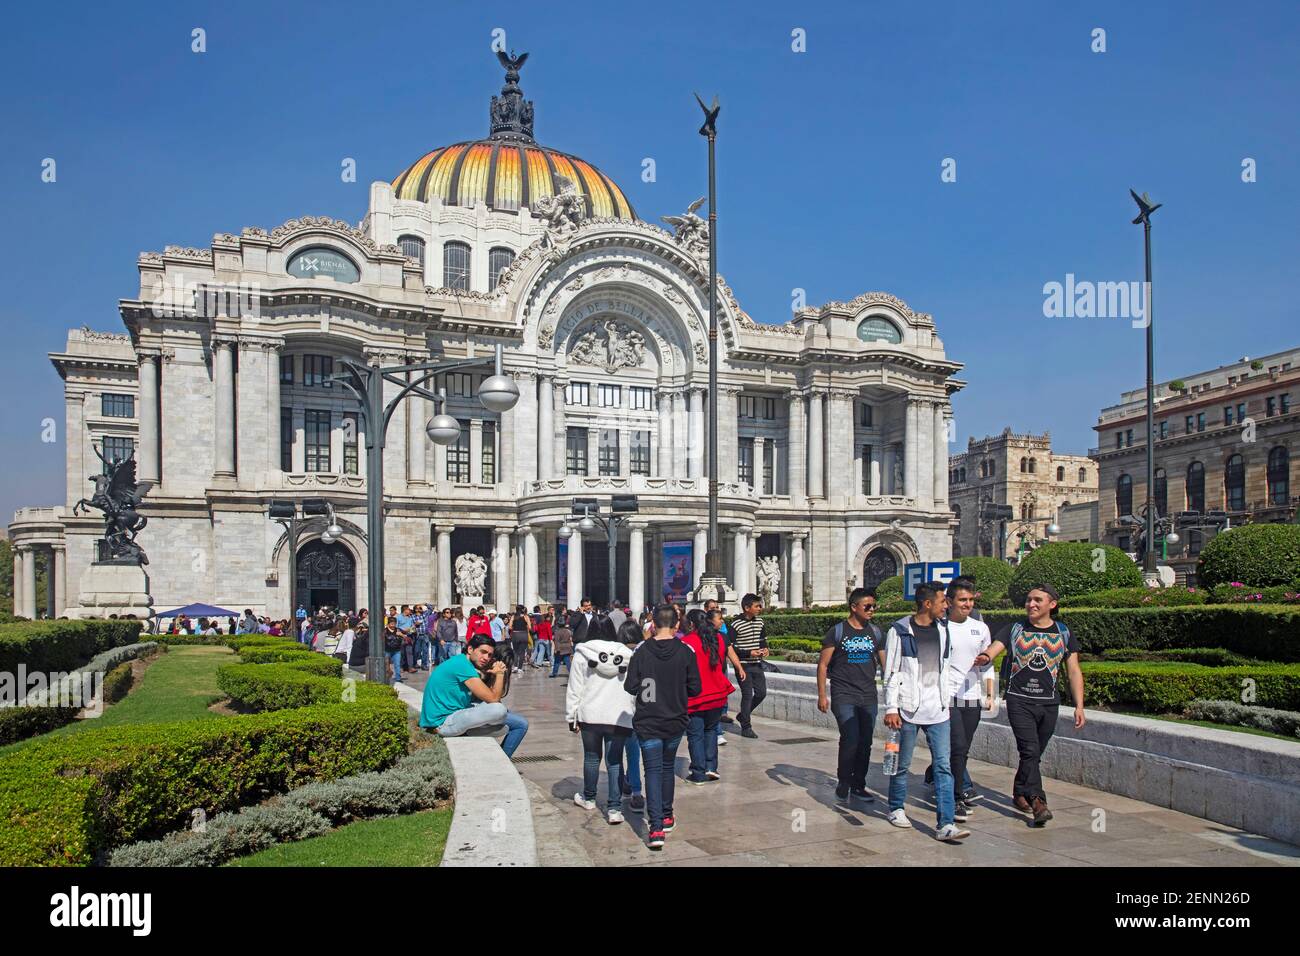 Palacio de Bellas Artes / Palast der Schönen Künste im Jugendstil und neoklassizistischen Stil, Kulturzentrum im historischen Stadtzentrum von Mexiko-Stadt Stockfoto